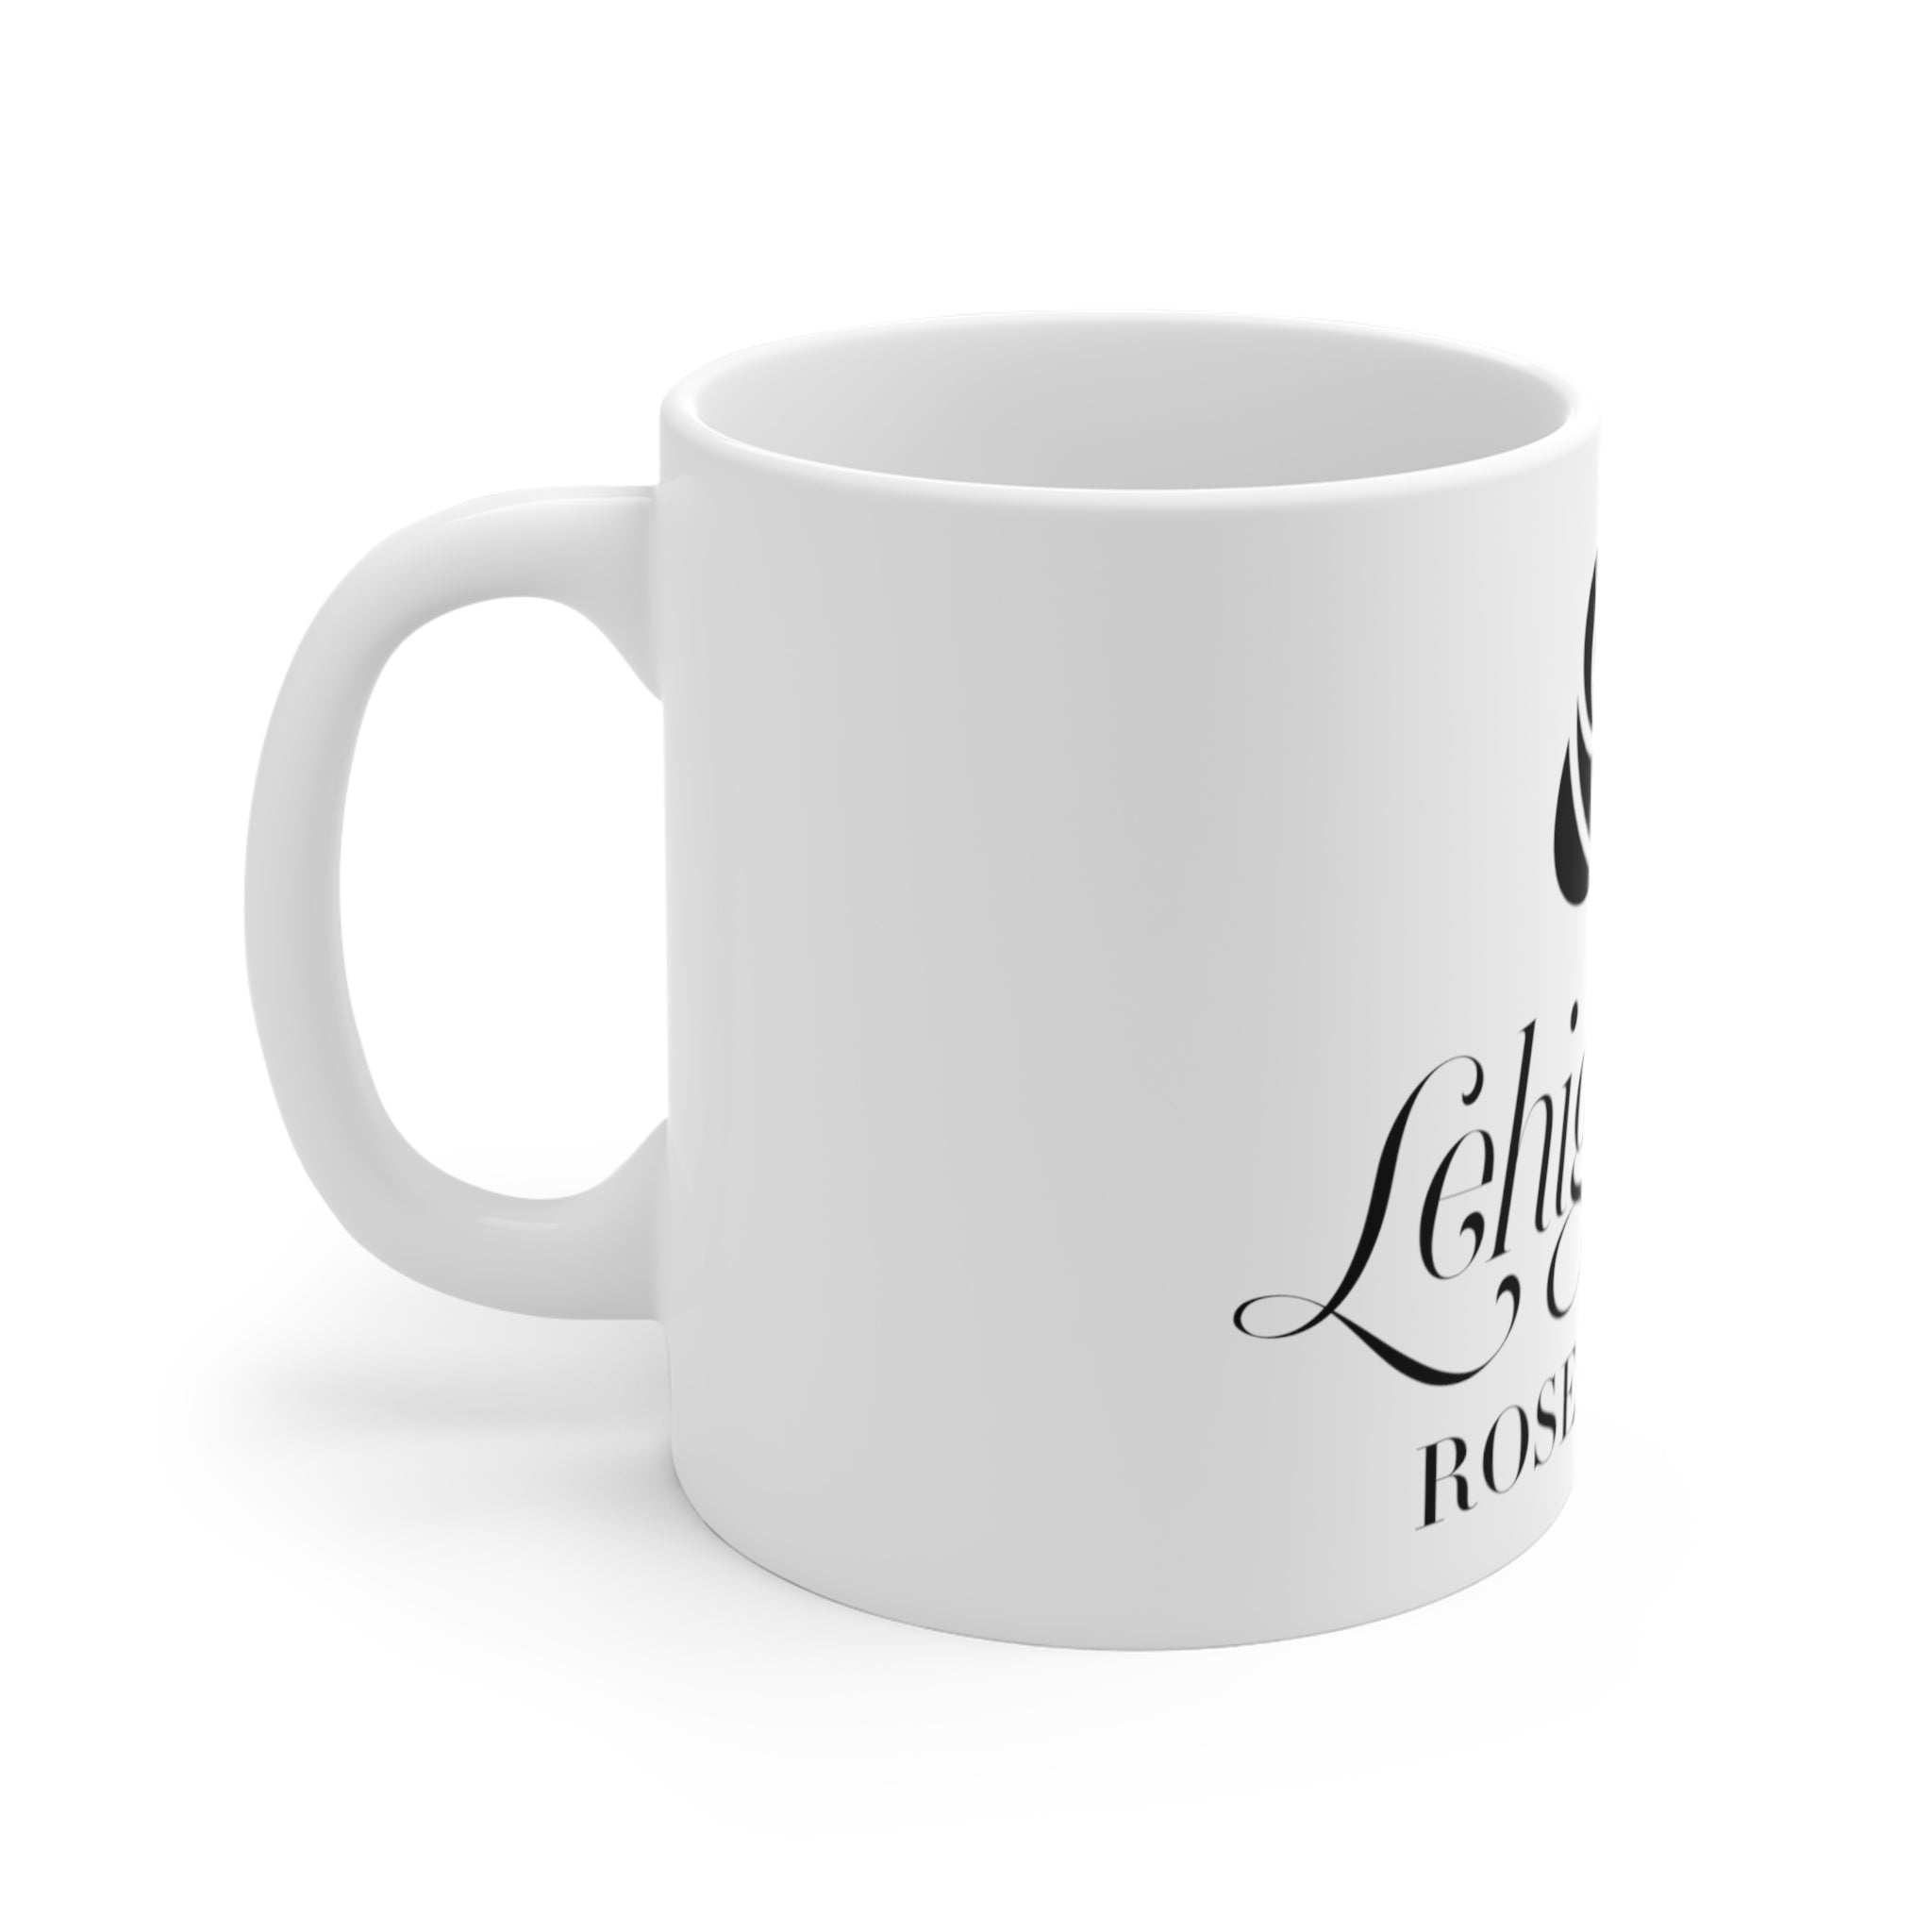 lv mug for women